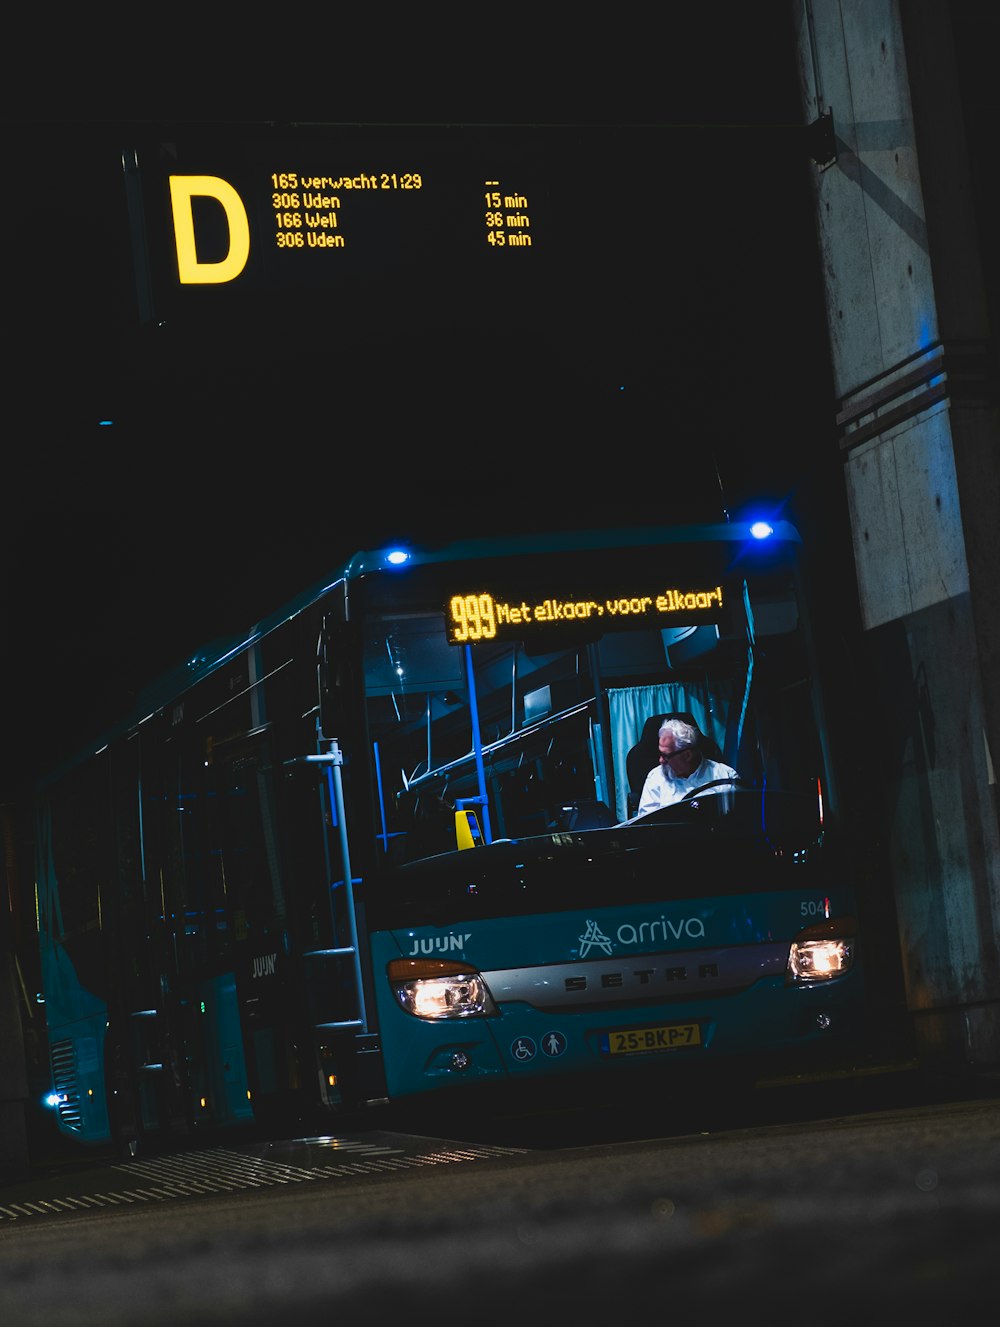 man in white shirt riding on bus during nighttime